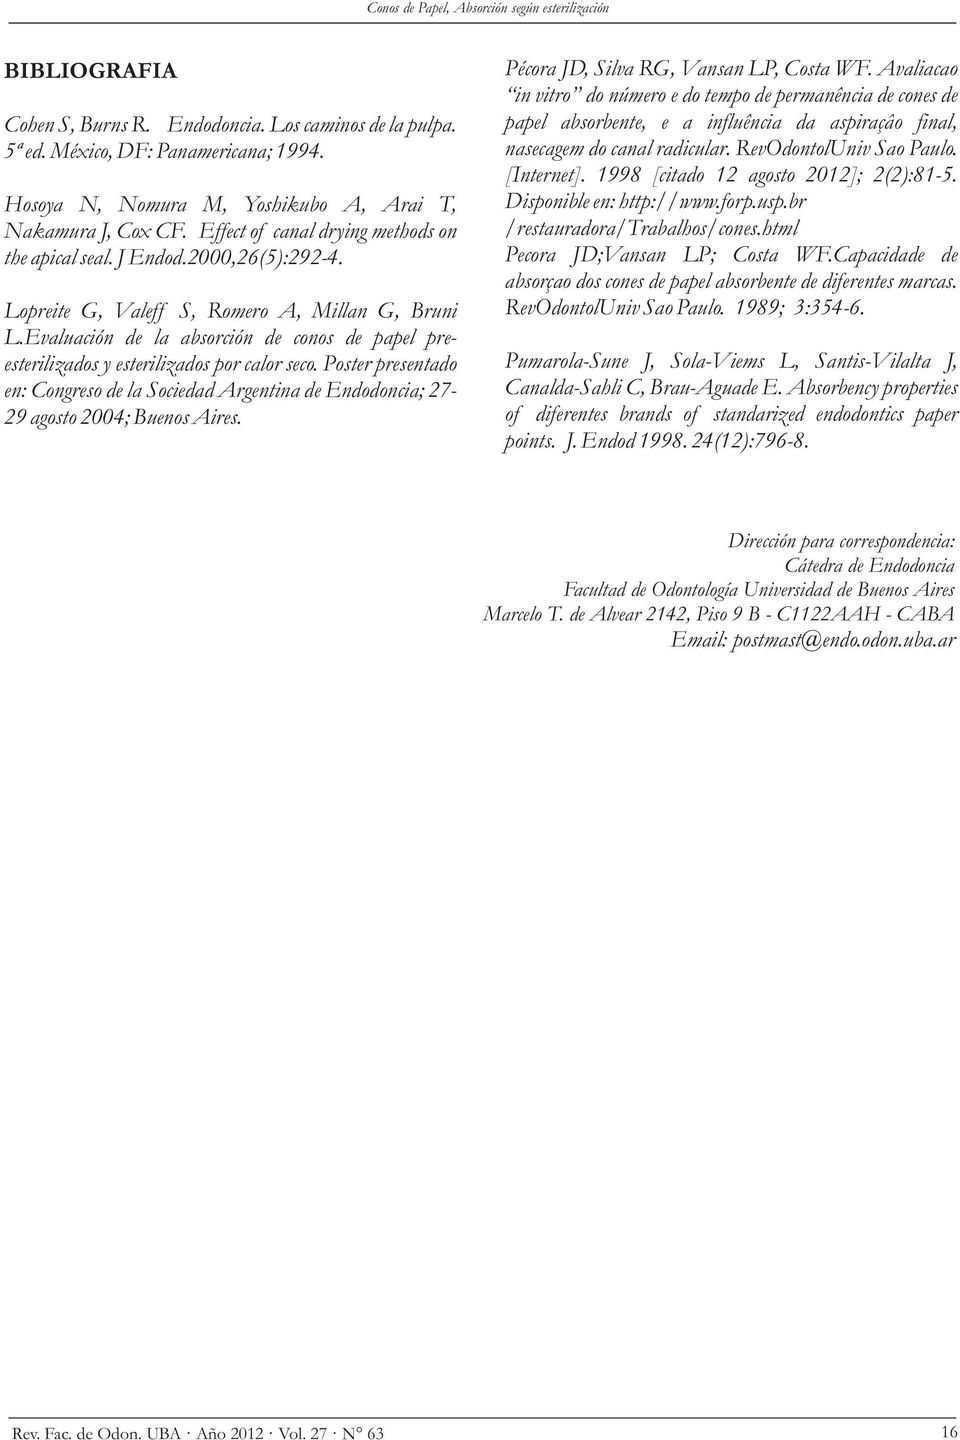 Evaluación de la absorción de conos de papel preesterilizados y esterilizados por calor seco. Poster presentado en: Congreso de la Sociedad Argentina de Endodoncia; 27-29 agosto 2004; Buenos Aires.